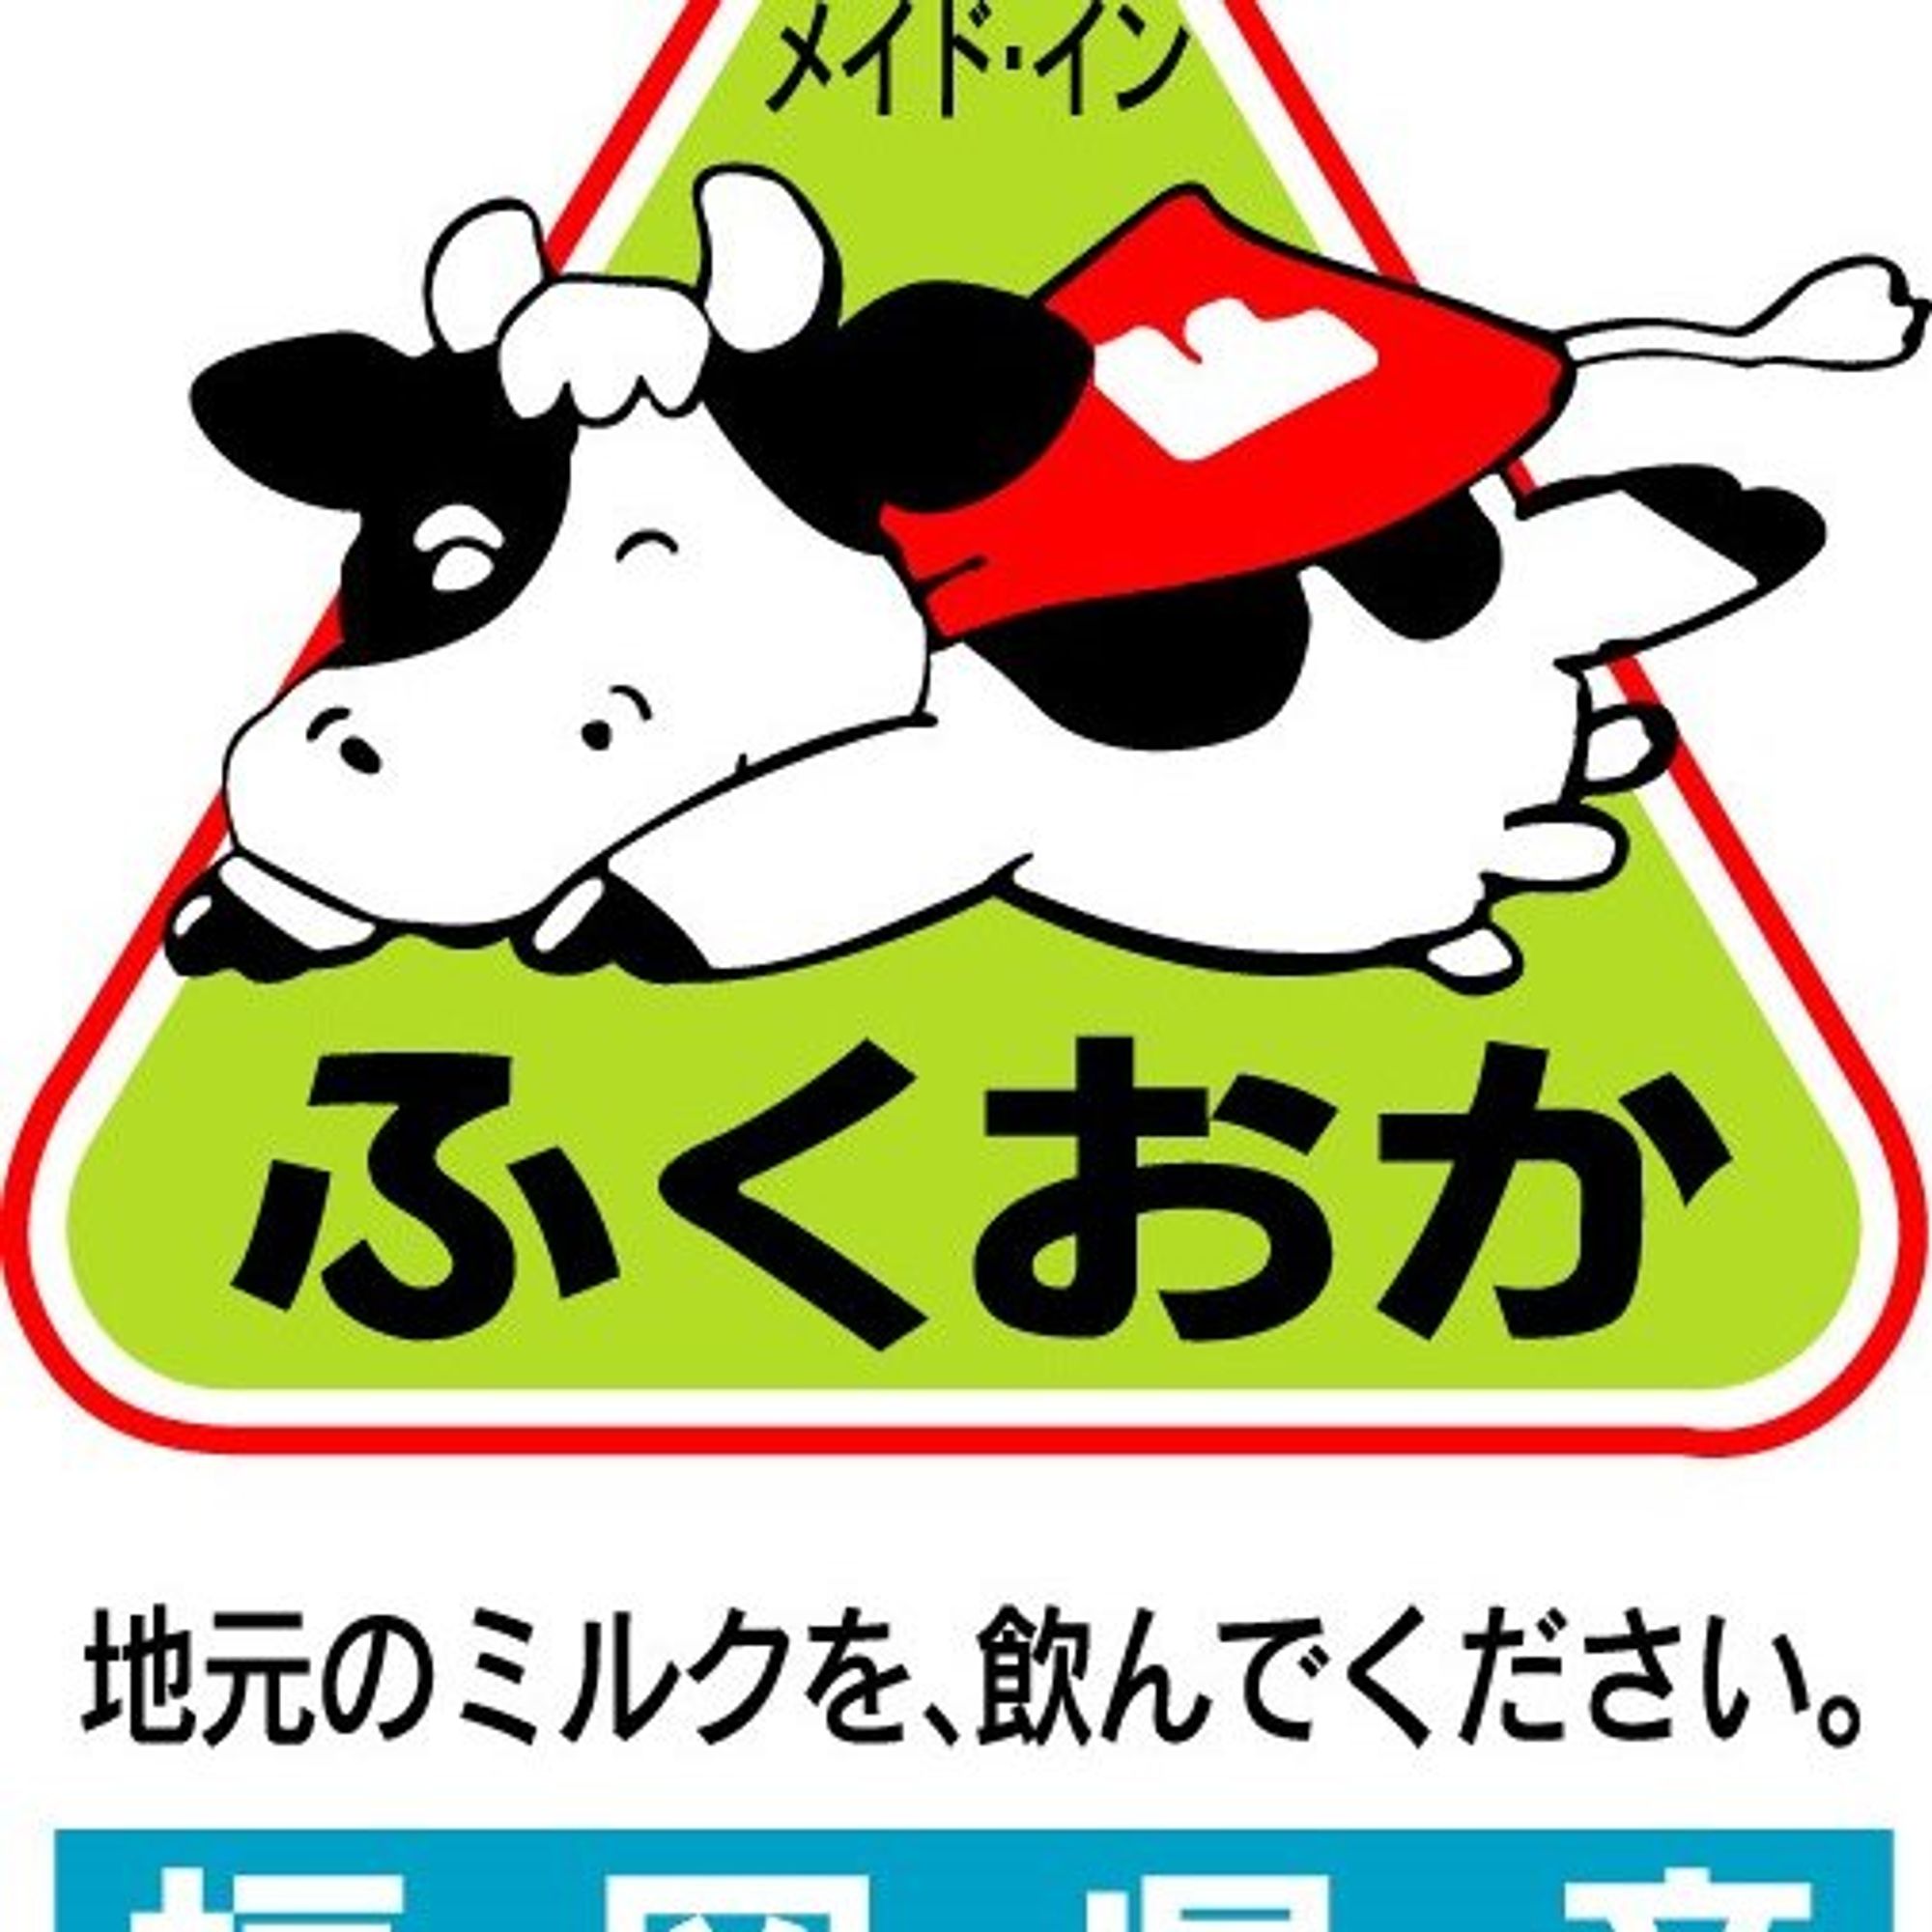 ミルク祭〜福岡県産の牛乳を飲もう〜🐄